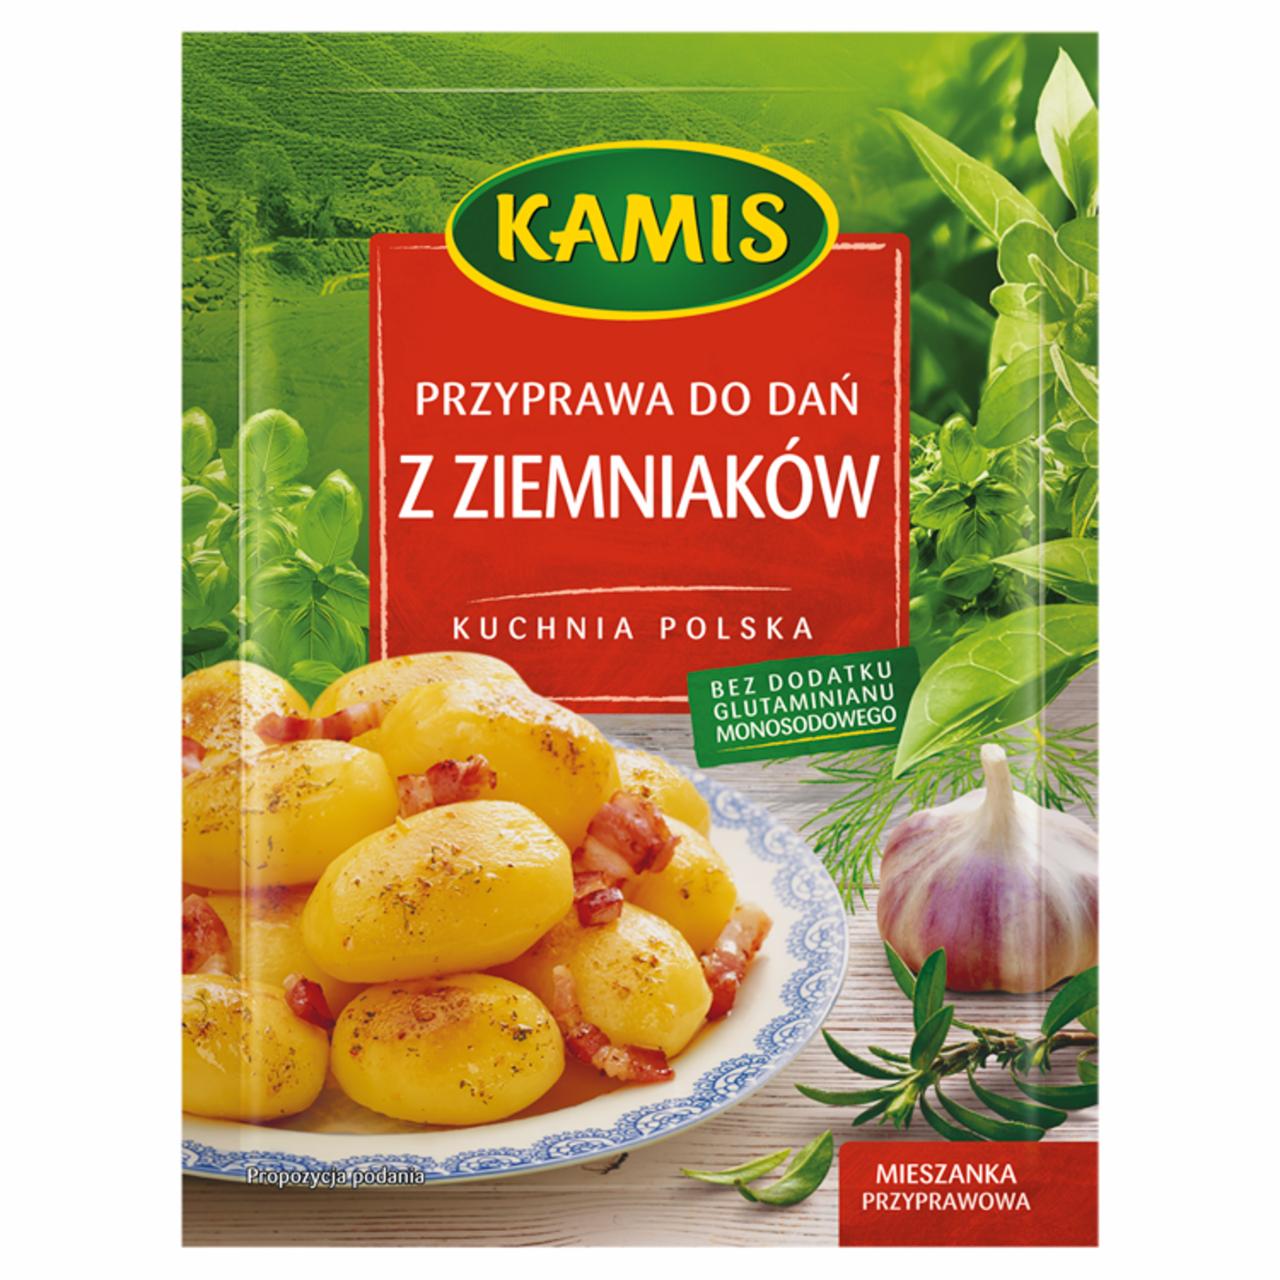 Zdjęcia - Kuchnia polska Przyprawa do dań z ziemniaków Mieszanka przyprawowa Kamis